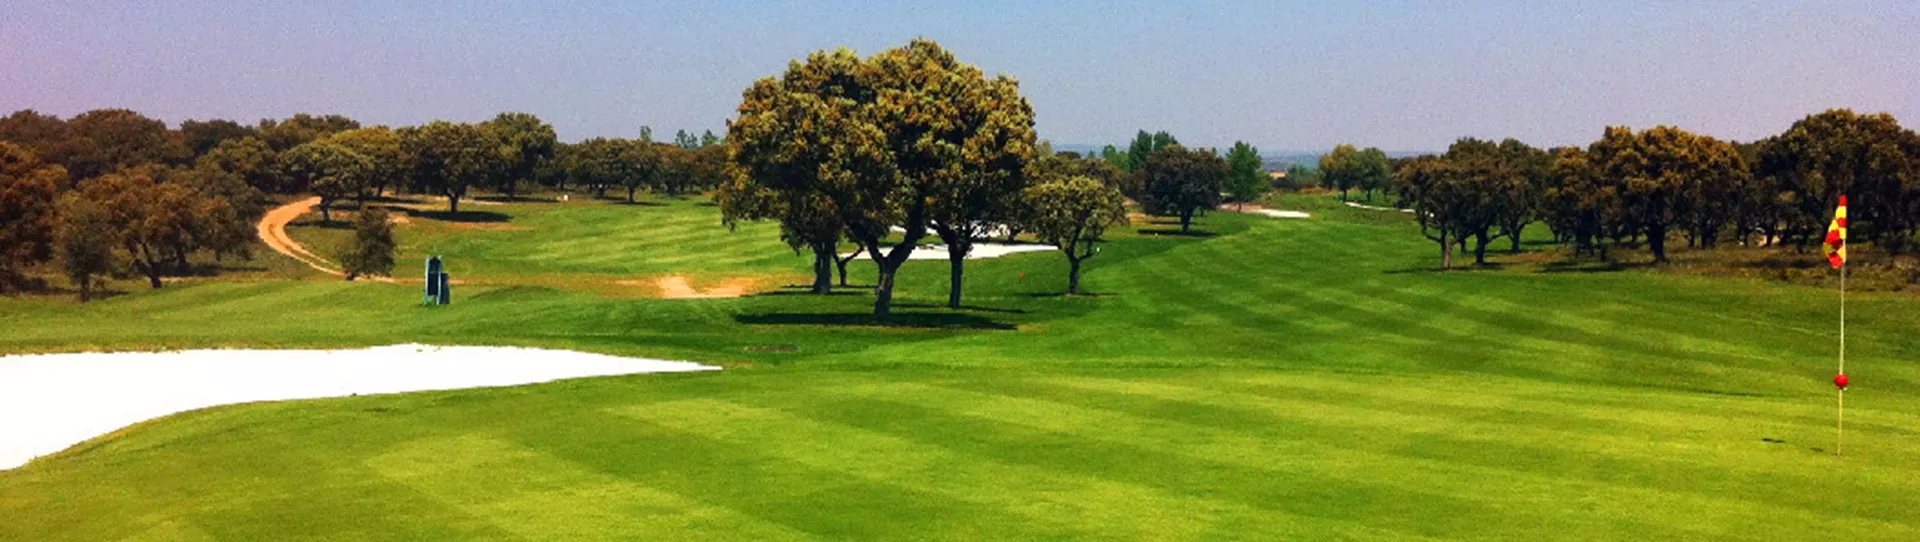 Spain golf courses - Villamayor Golf Course - Photo 1